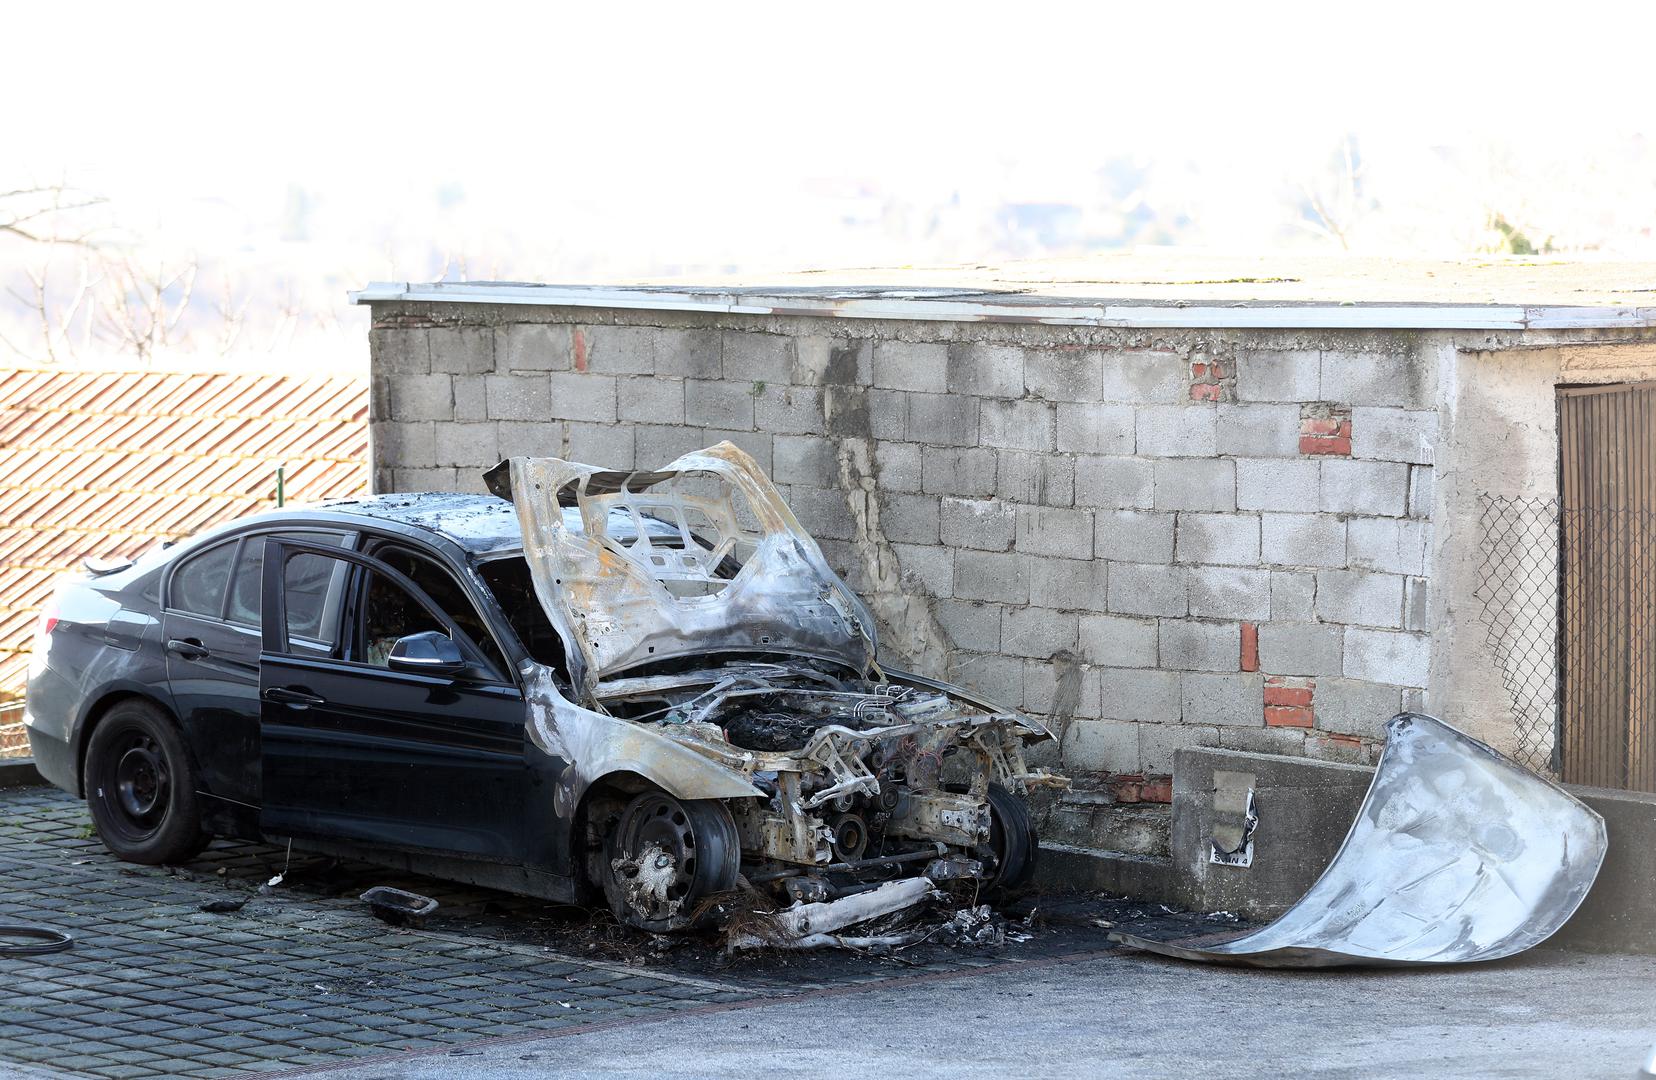 U Susedgradu u Ulici Dominika Mandića oko 2.20 sati, na parkiralištu, iz zasad neutvrđenog razloga izbio je požar na osobnom automobilu marke BMW zagrebačkih registarskih oznaka.